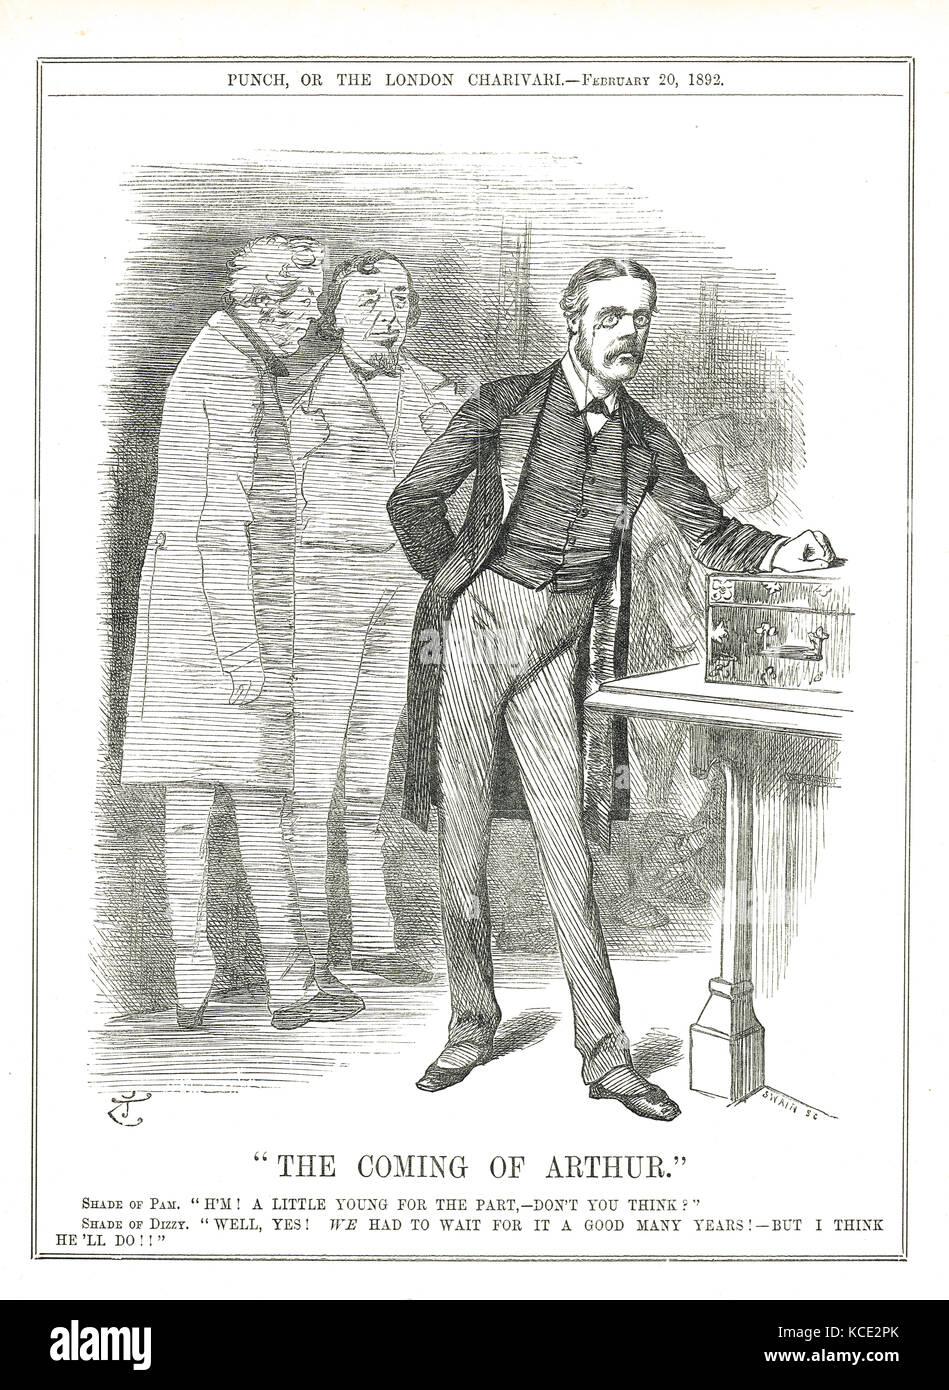 L'arrivo di Arthur Balfour, 1892. I fantasmi di Disraeli e Palmerston discutono del leader conservatore nella camera dei comuni, che approvano nonostante la sua giovinezza. Foto Stock